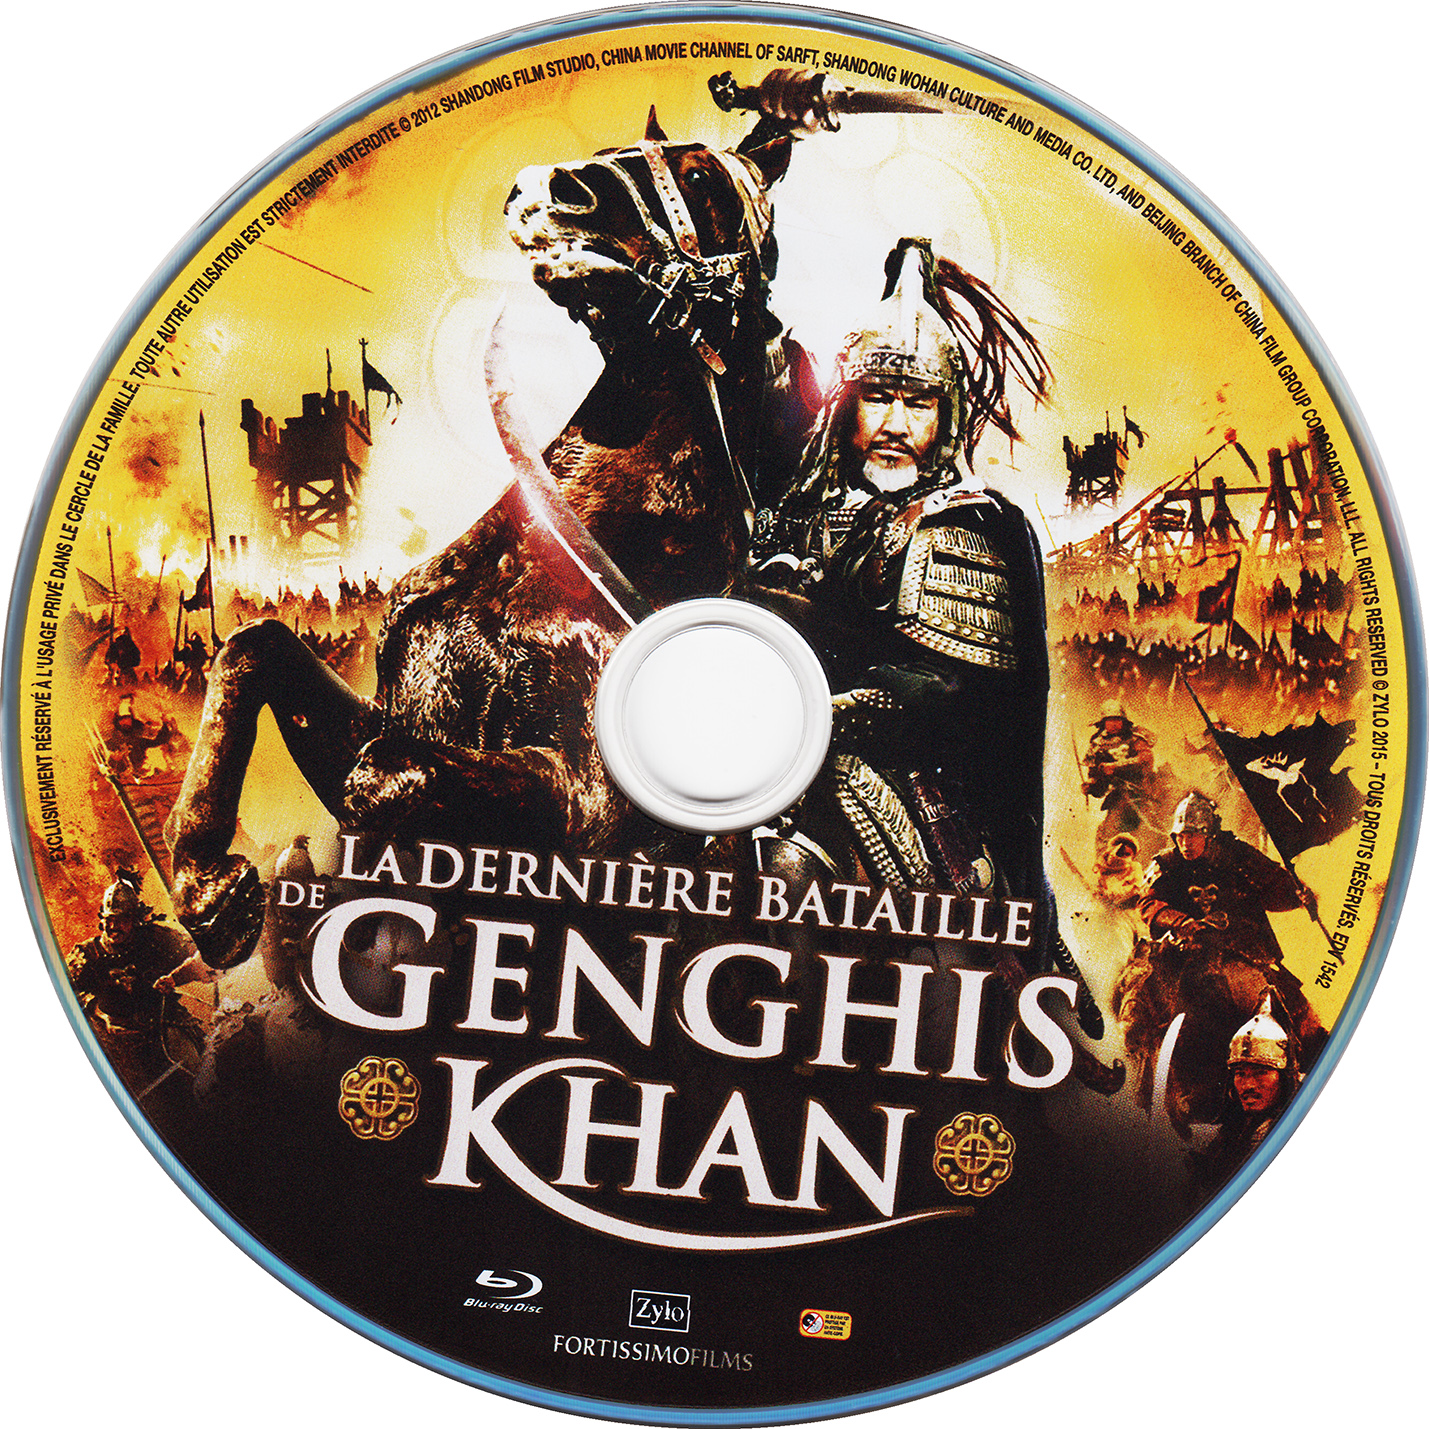 La dernire bataille de genghis khan (BLU-RAY)